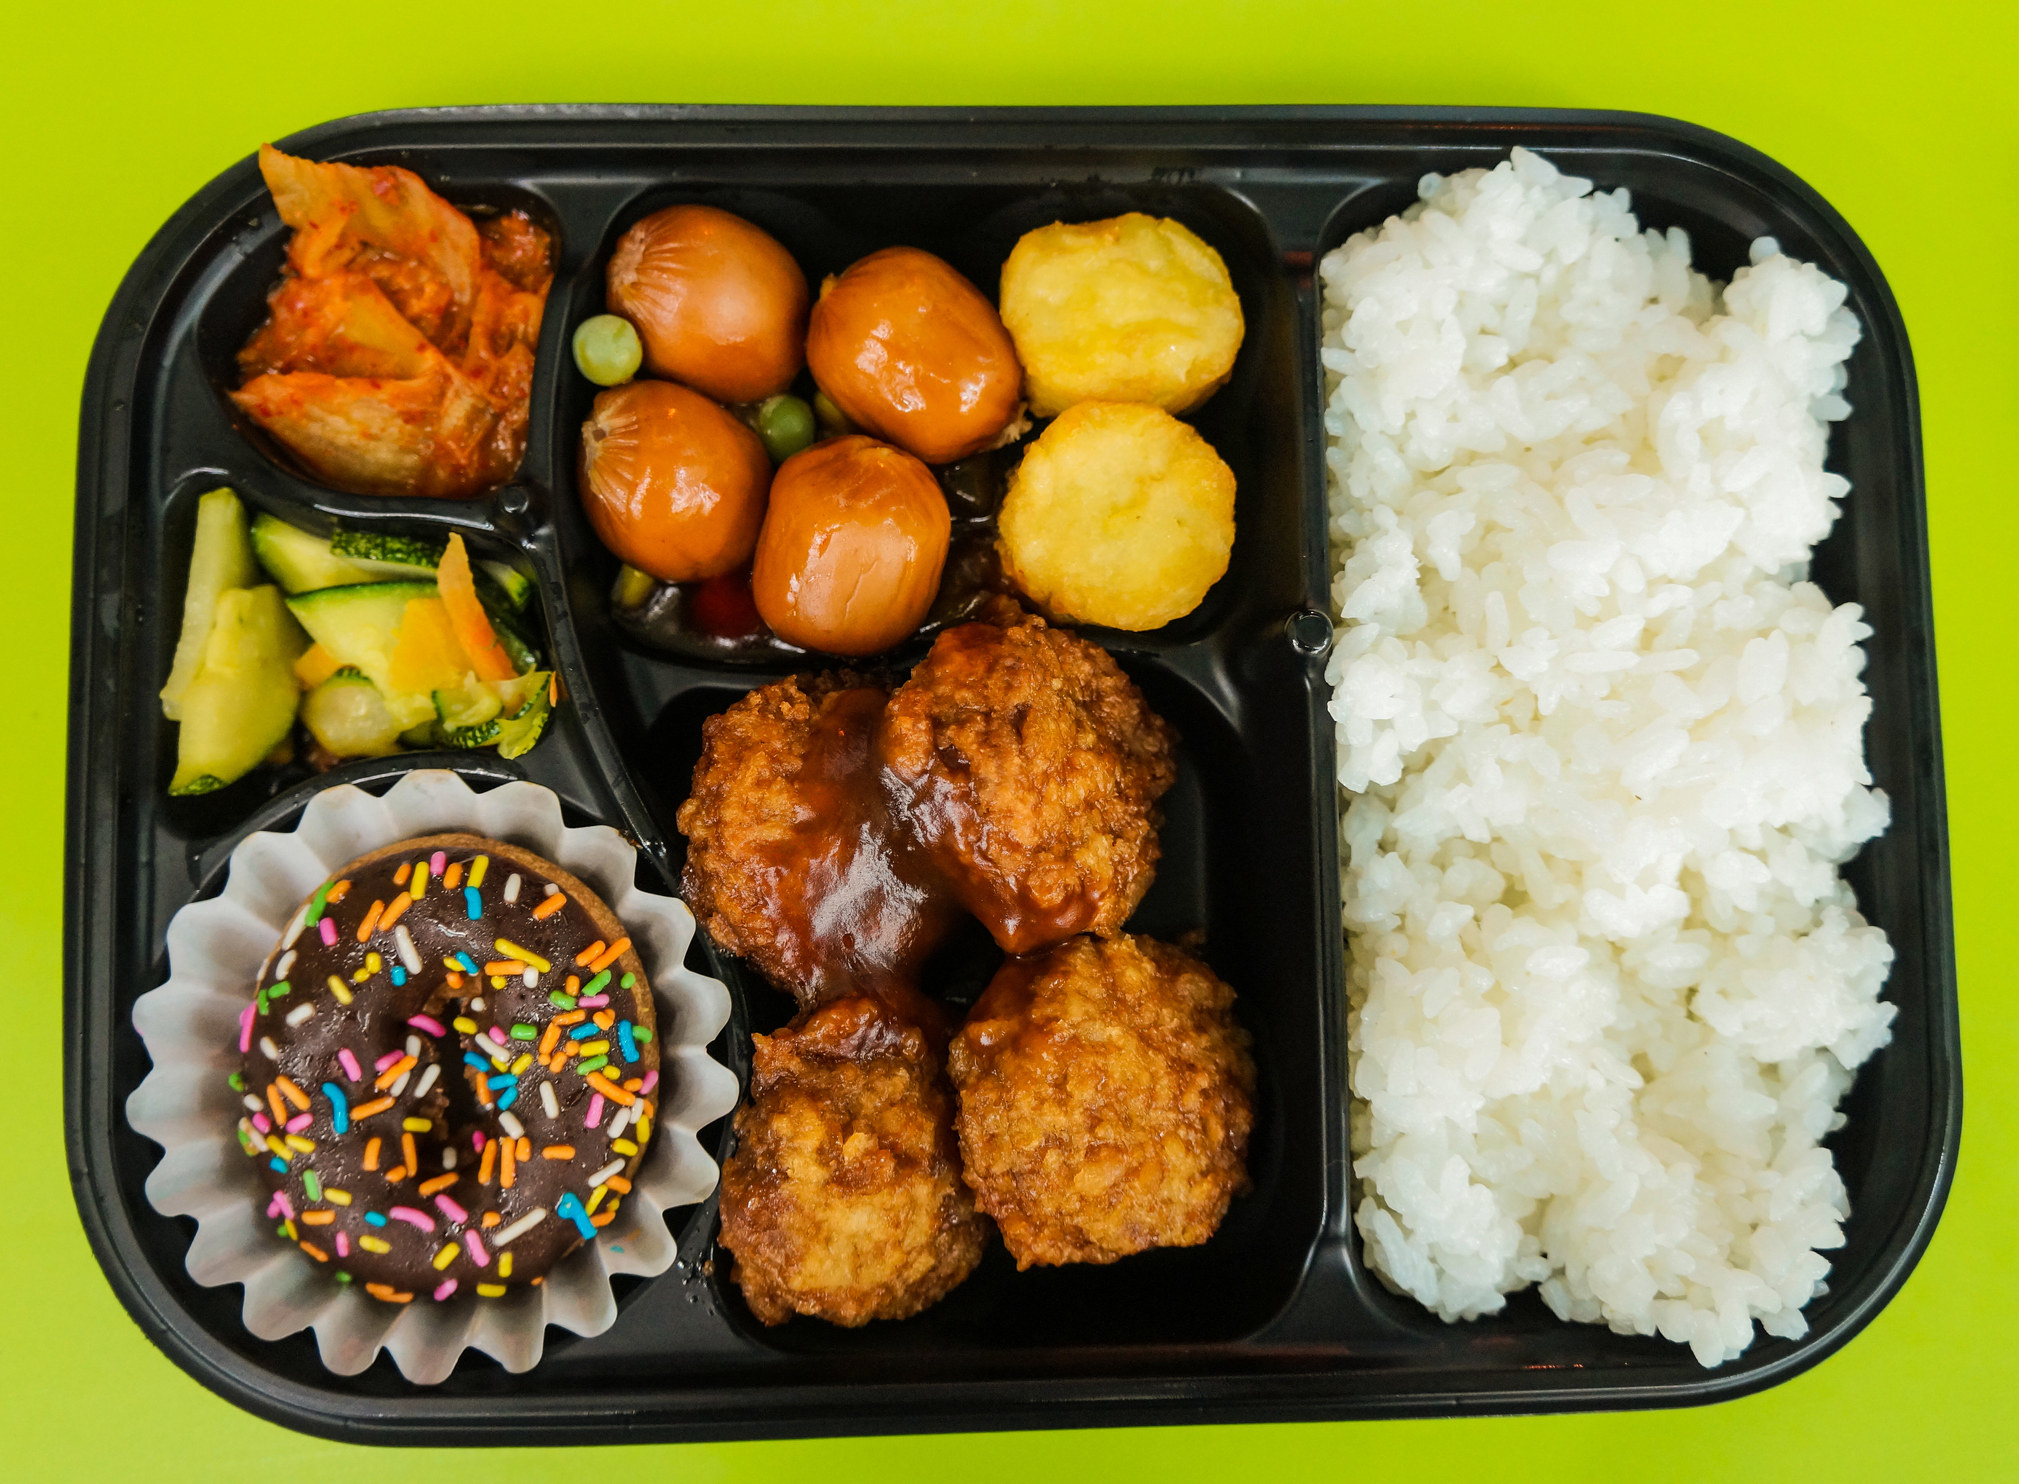 A lunch bento box in Korea.